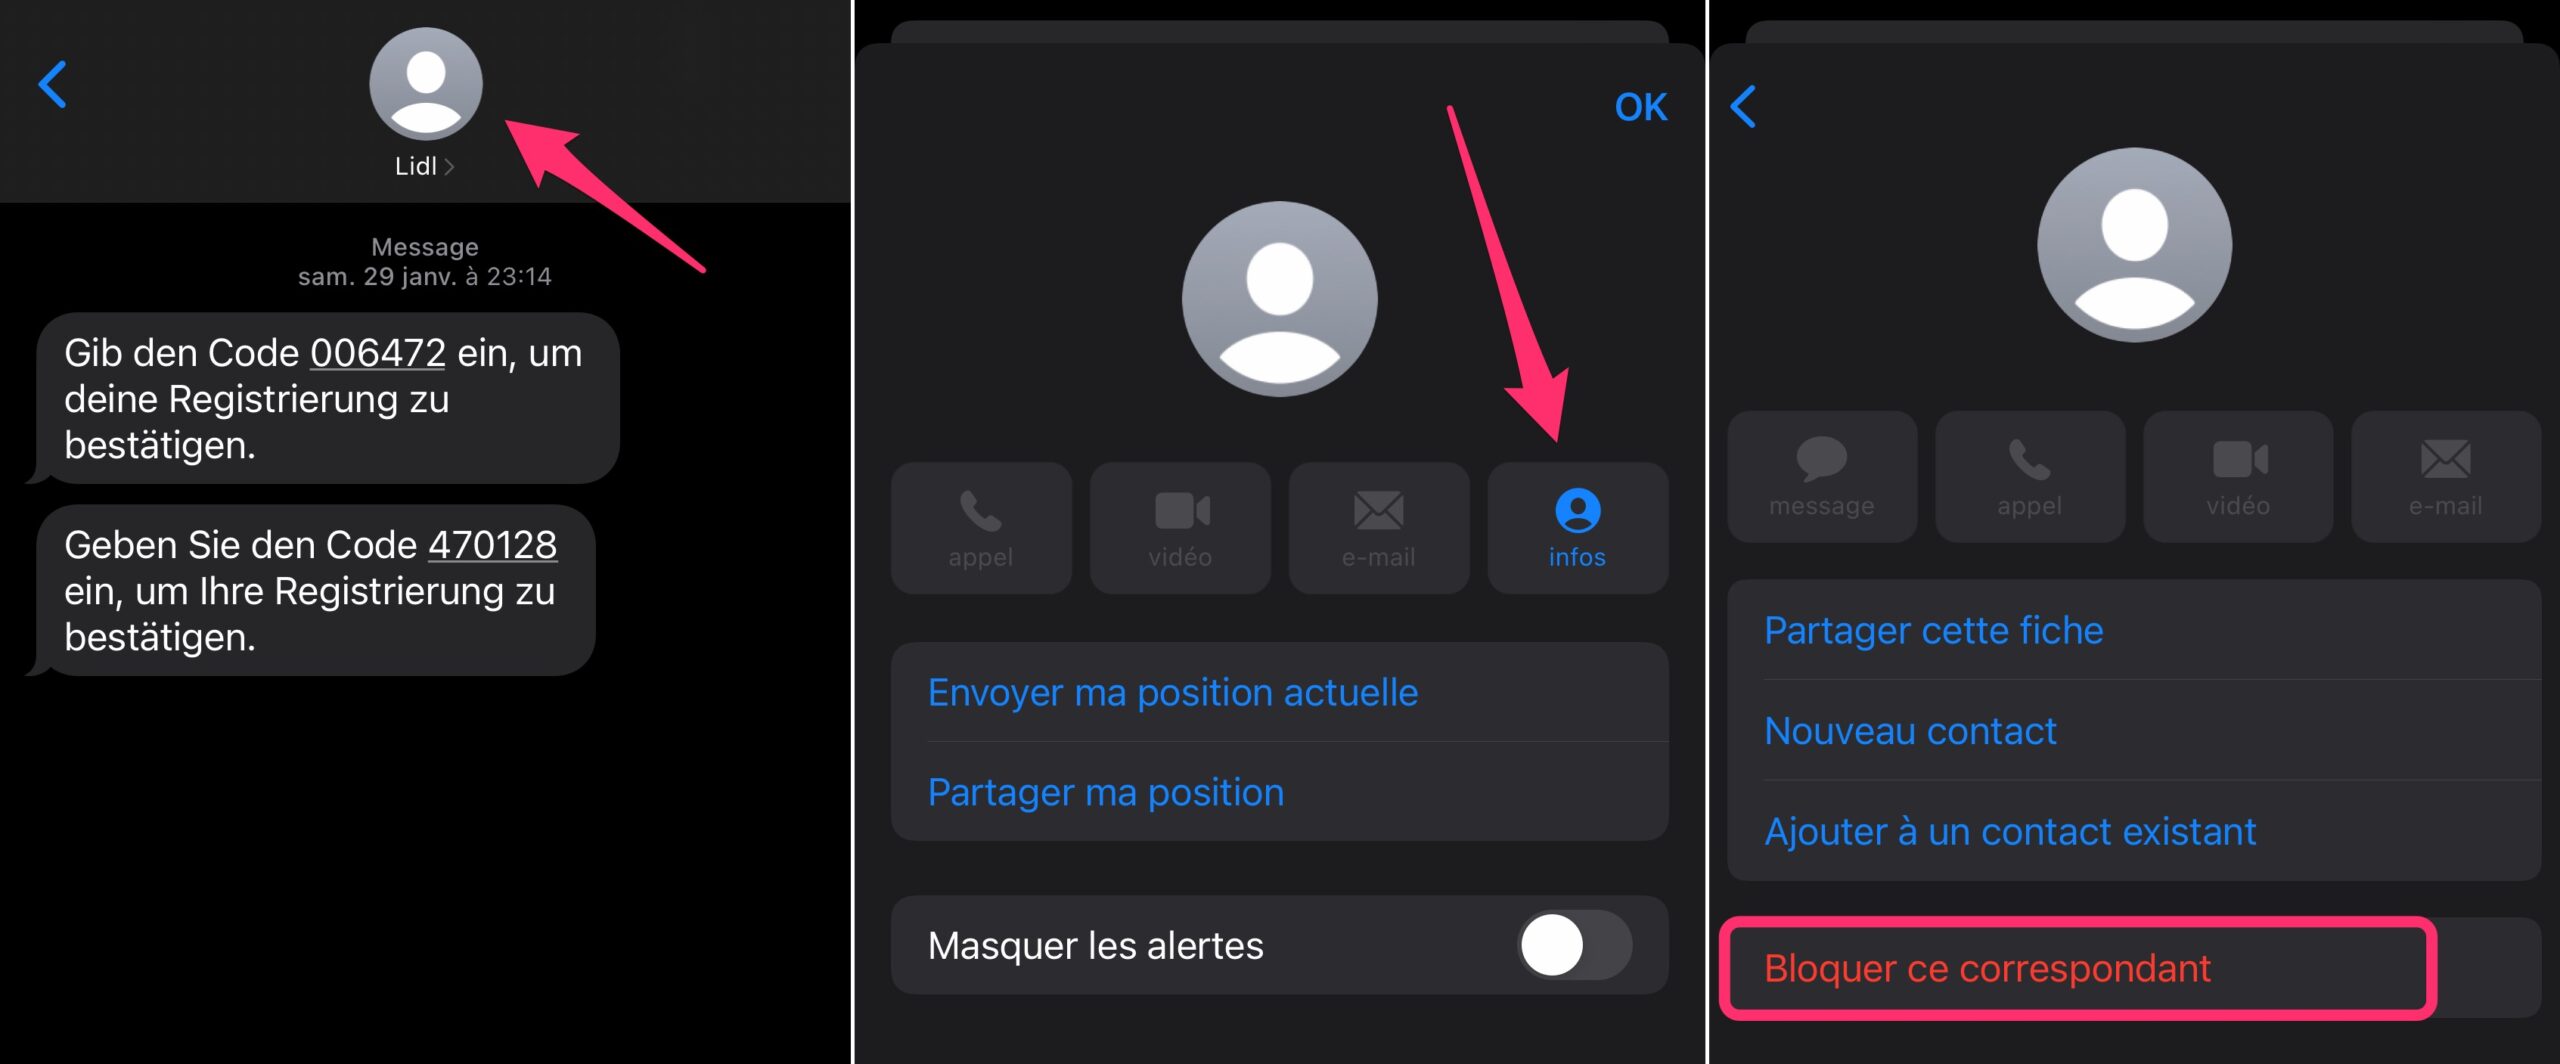 écran réglage iOS avec option pour bloquer un contact